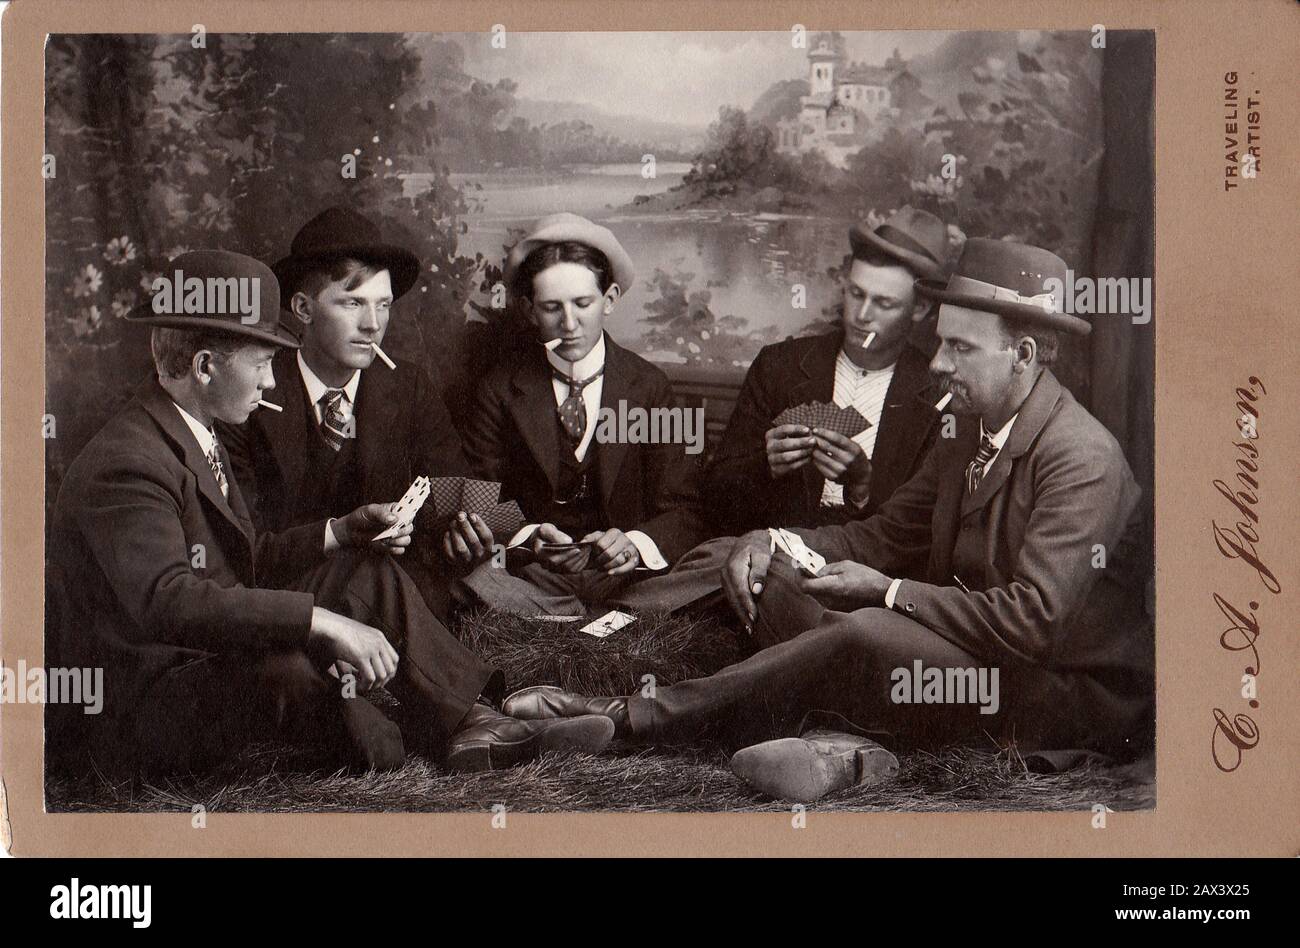 1908 ca ,  USA : Five friends at play . Photo by C. A. Johnson , Travelling Artist . - AMICI - portrait - ritratto - UOMO - UOMINI - YOUNG MEN - MAN - giovanotti - giovanotto - GIOCO A CARTE - POKER - cards - fun - divertimento - scherzo - funny - buffo  - tie - collar - cravatta - colletto - MODA MASCHILE - FASHION - HISTORY - FOTO STORICHE - shoes - scarpe  - AMICO - AMICI - NOVECENTO - 900's - '900  - hat - cappello - fumo - smoke - smokers - fumatore - fumatori - sigaretta - cigarette - contadini - peasants - abito della festa - campagna - country - fotografo ambulante  ---- Archivio GBB Stock Photo